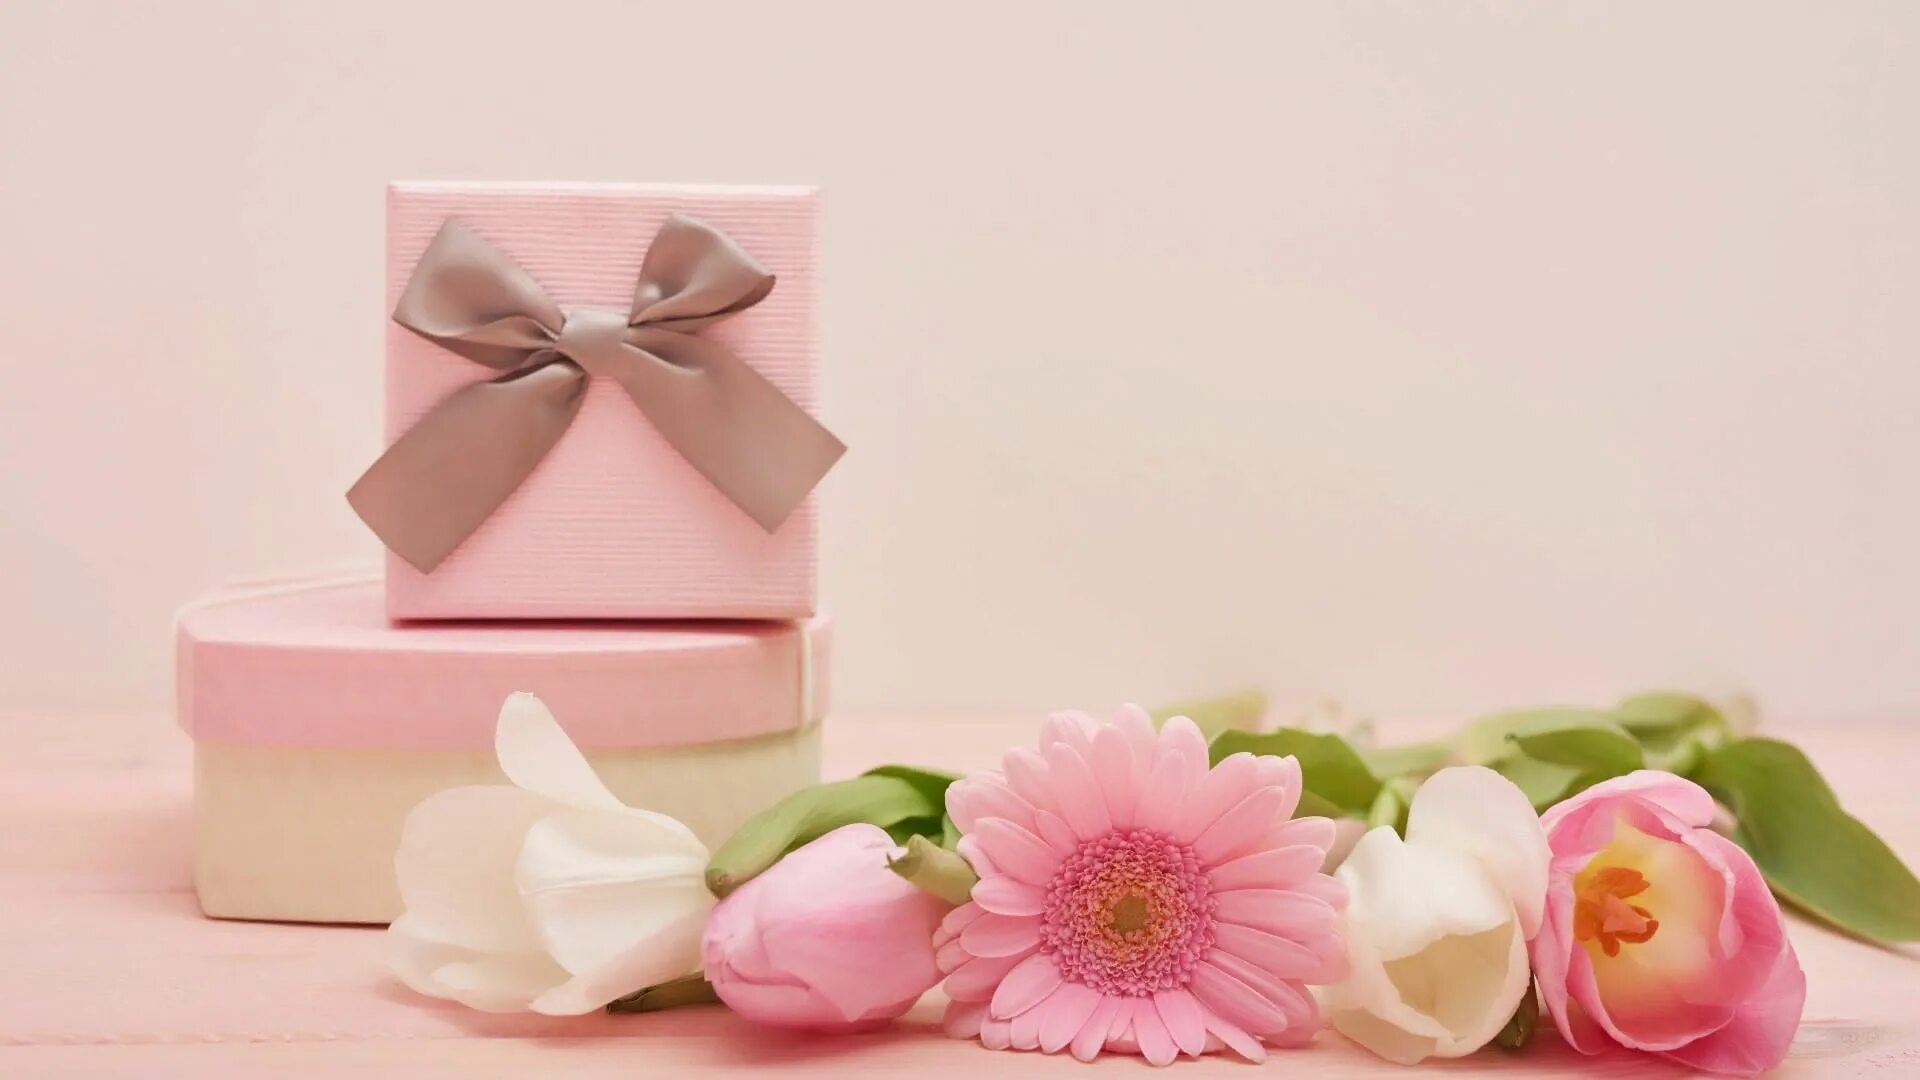 Нежность в подарок. Подарочные коробки розовые. Цветы в подарок. Нежные цветы в подарок. Подарочная коробка и цветы в розовых тонах.